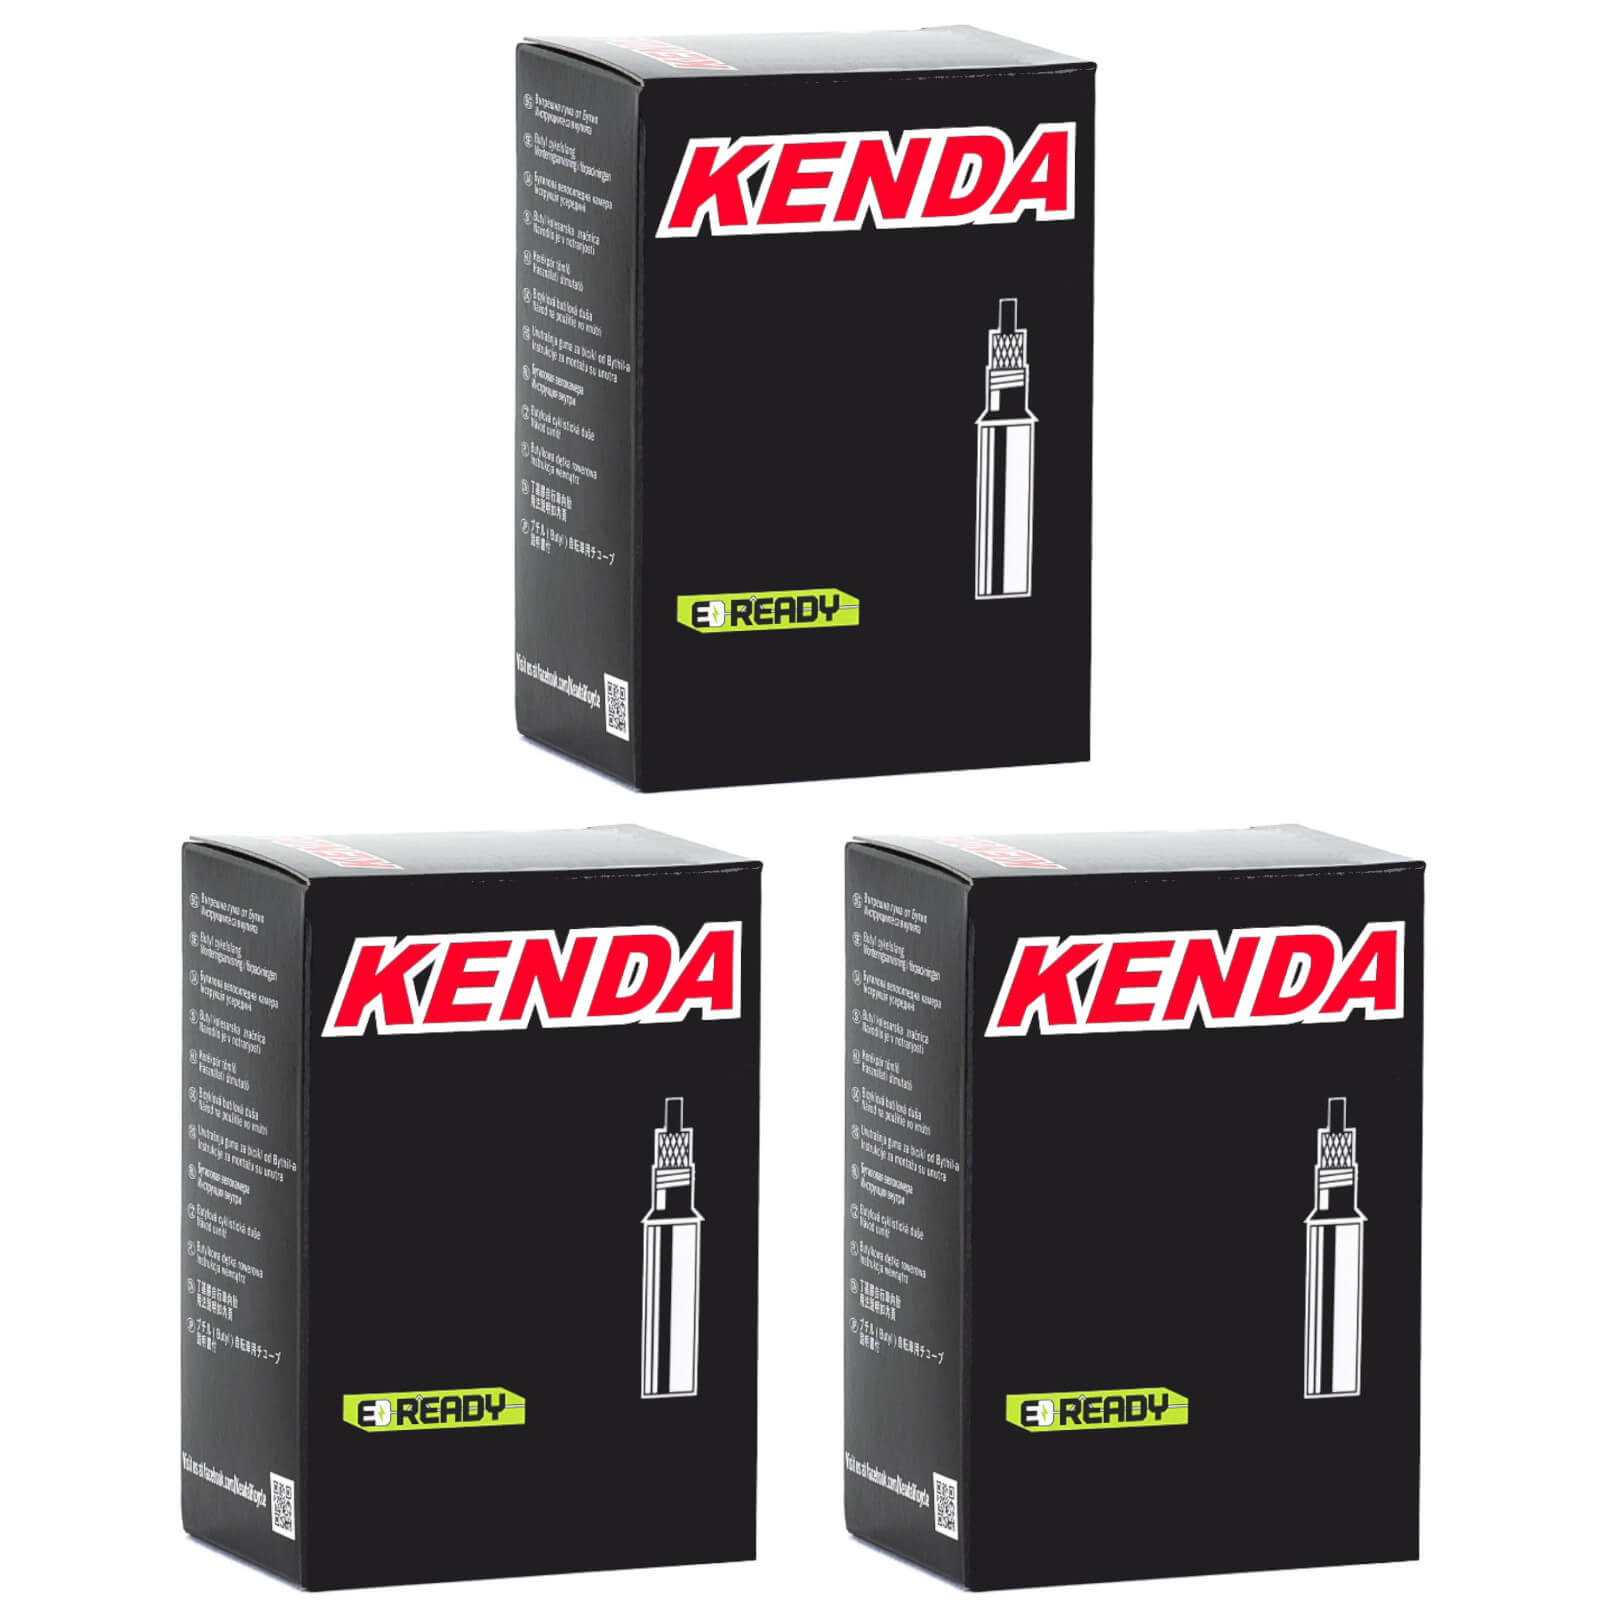 Kenda 700x28-35c Removable Core 60mm 700c Presta Valve Bike Inner Tube Pack of 3